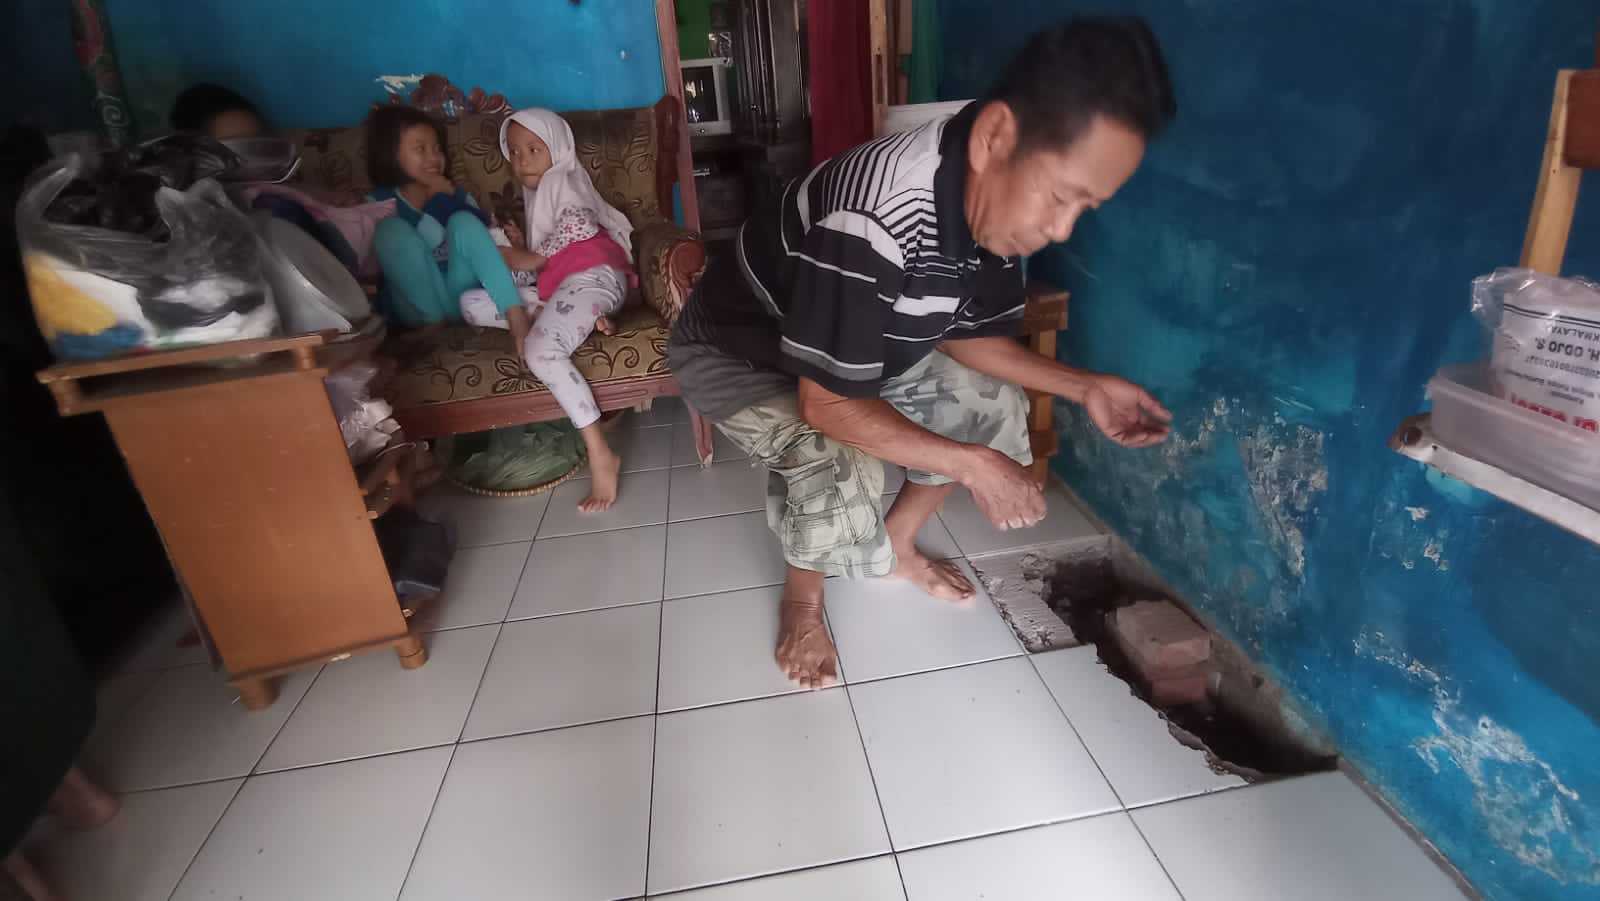 Lantai Rumah Warga Mangkubumi Tasikmalaya Terasa Panas Mendadak, Penyebabnya Terungkap